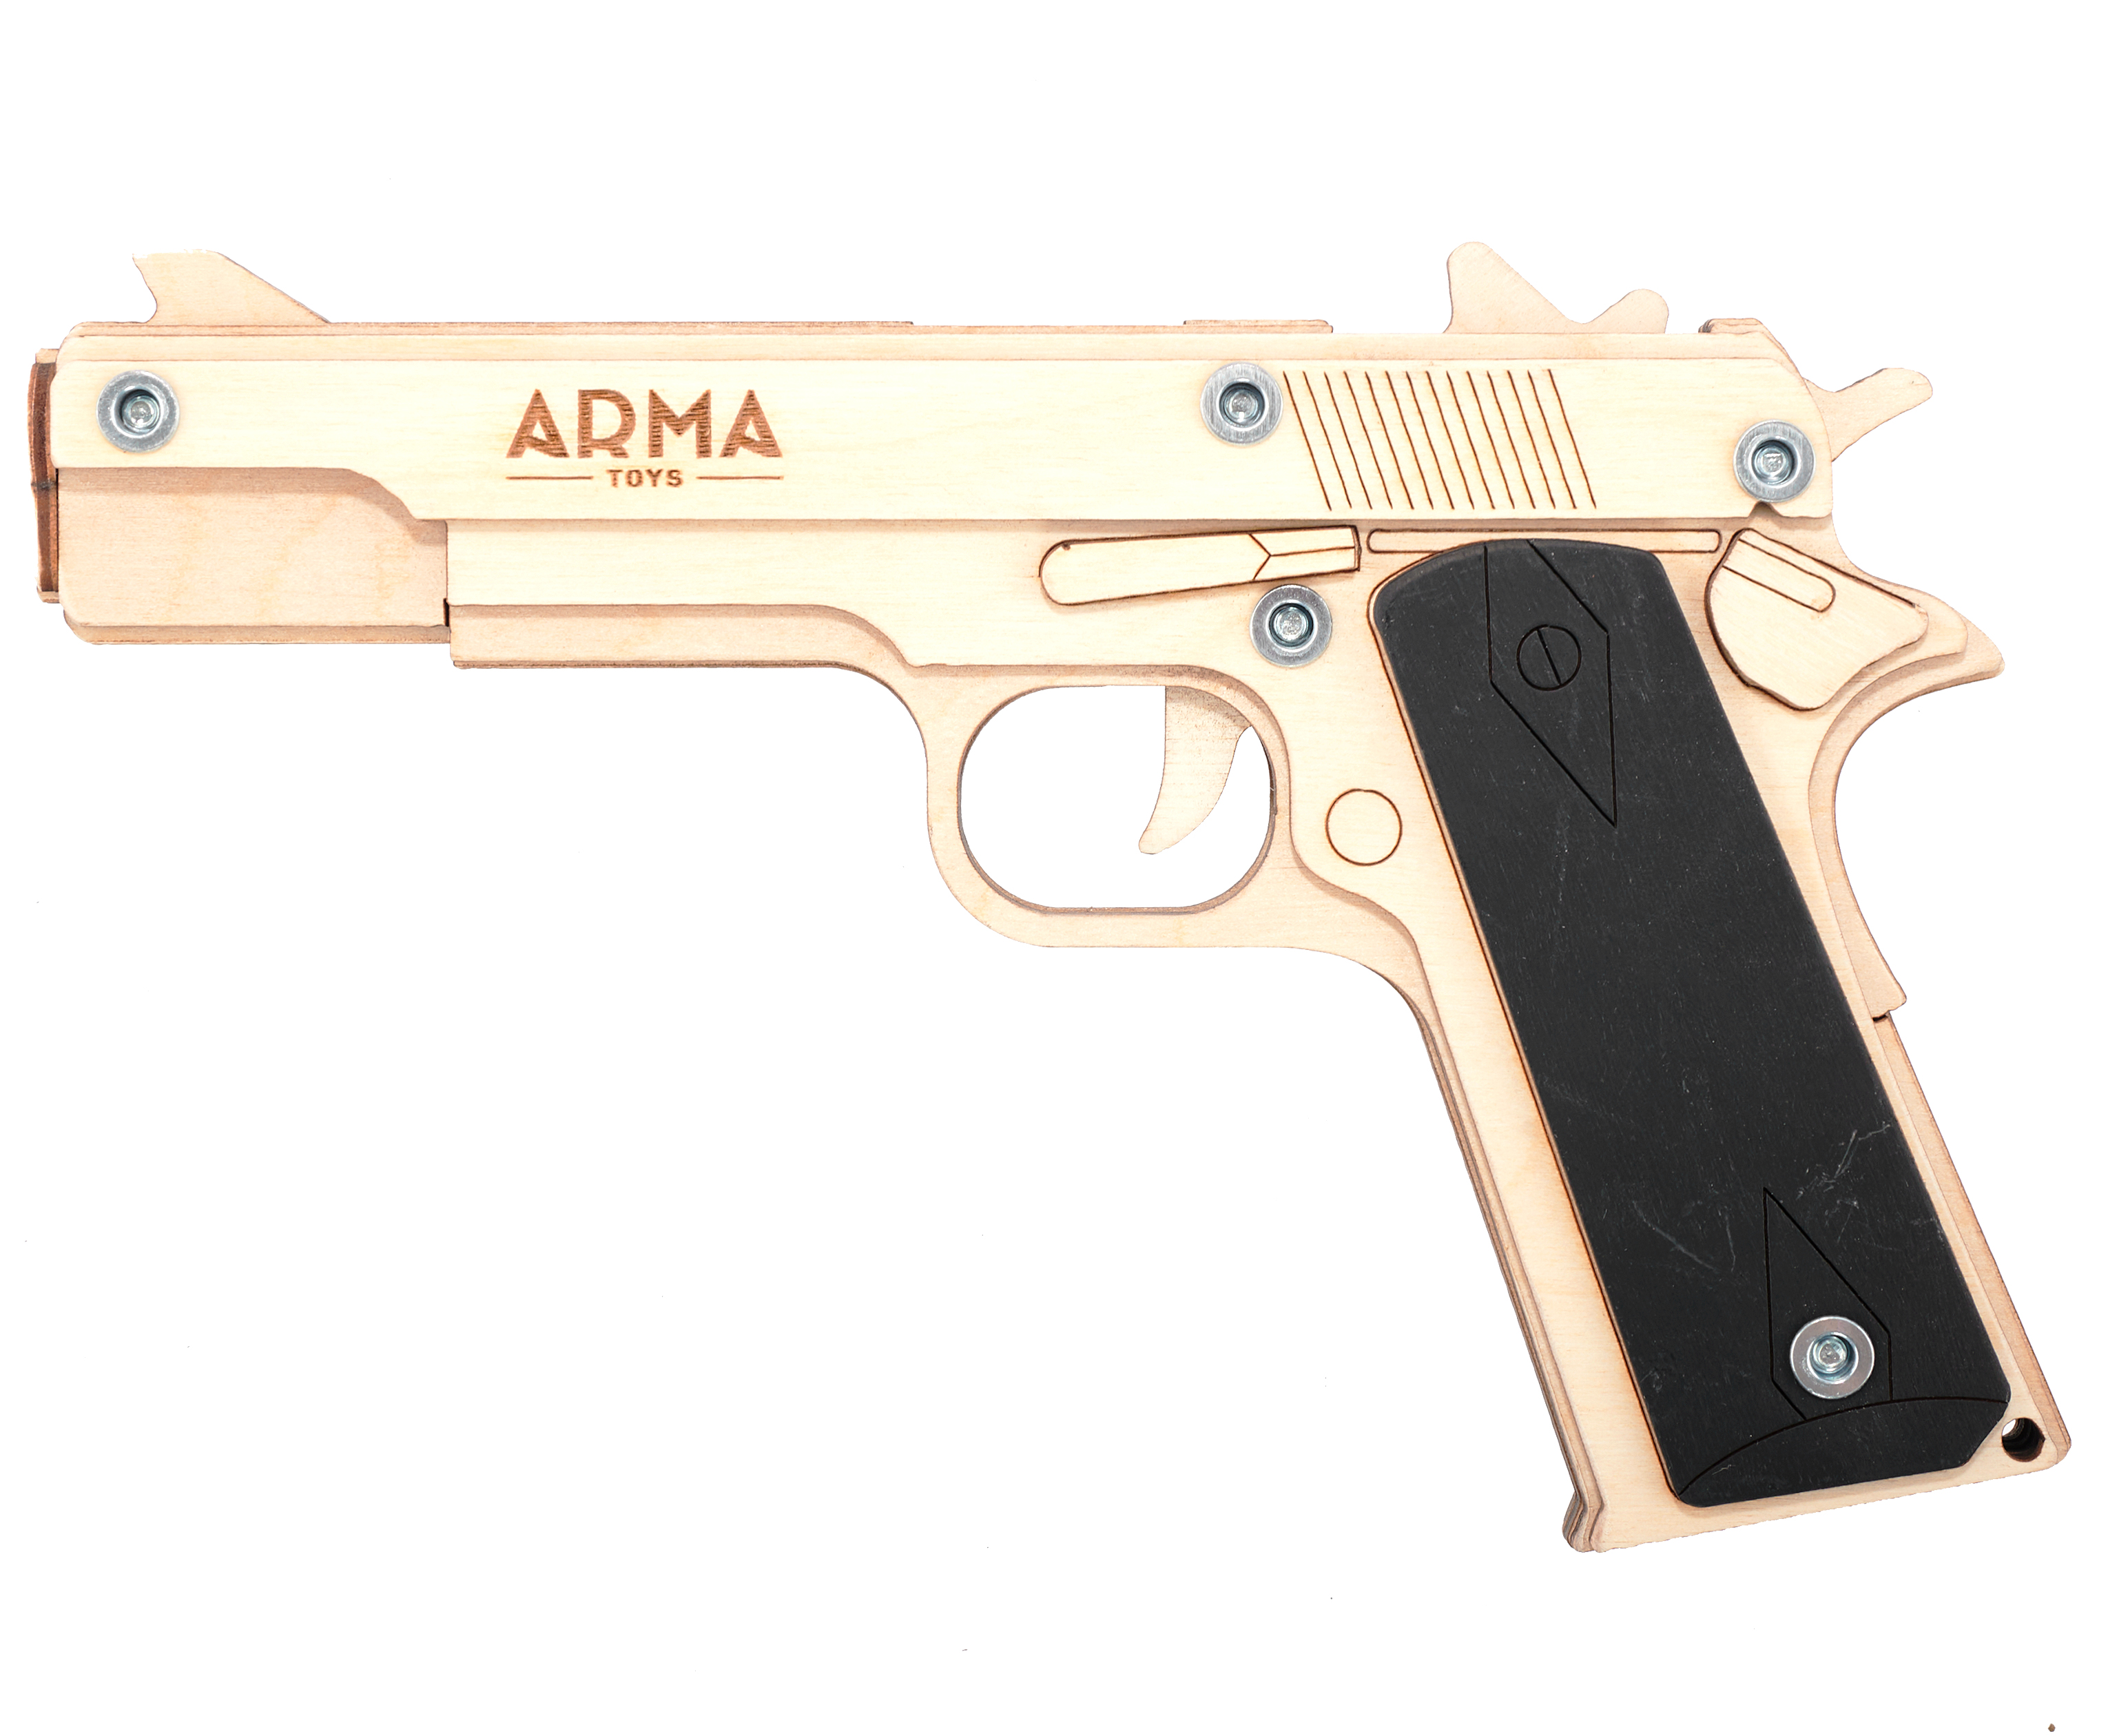 Резинкострел игрушечный Arma toys пистолет Кольт макет, Colt 1911, AT022 резинкострел arma toys снайперская винтовка мосина штык прицел at018